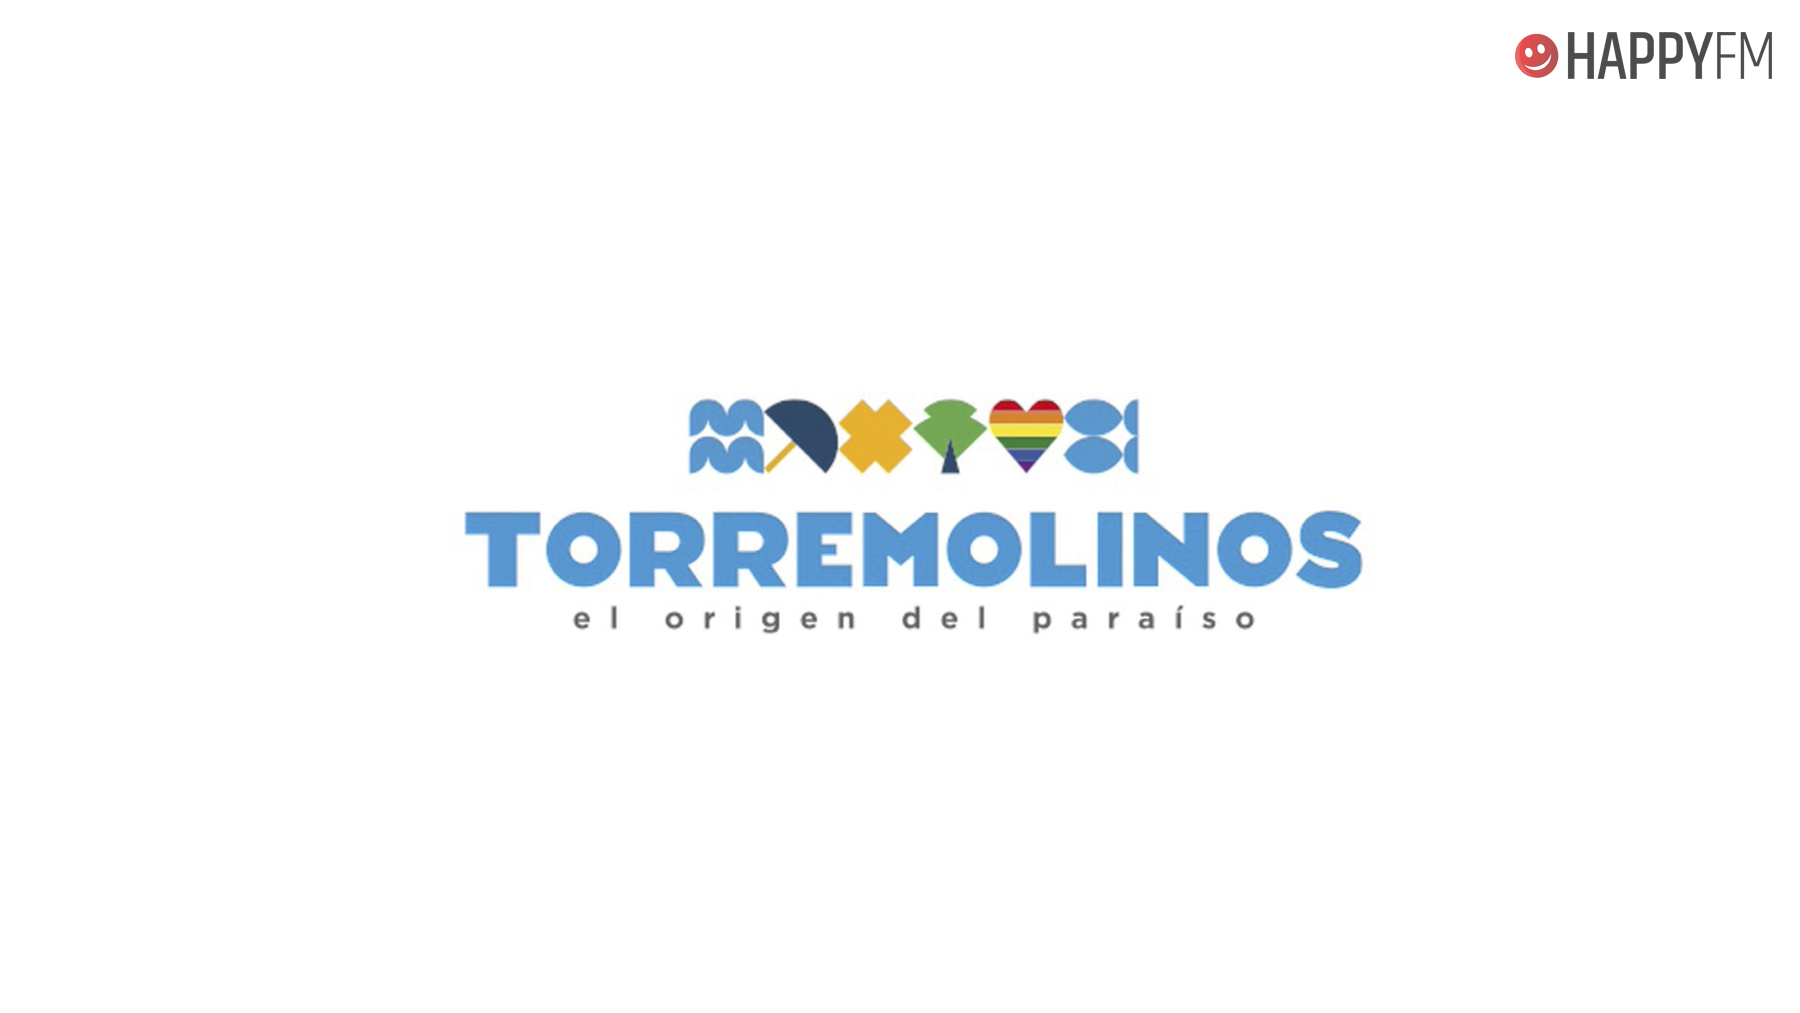 TORREMOLINOS: EL ORIGEN DEL PARAÍSO